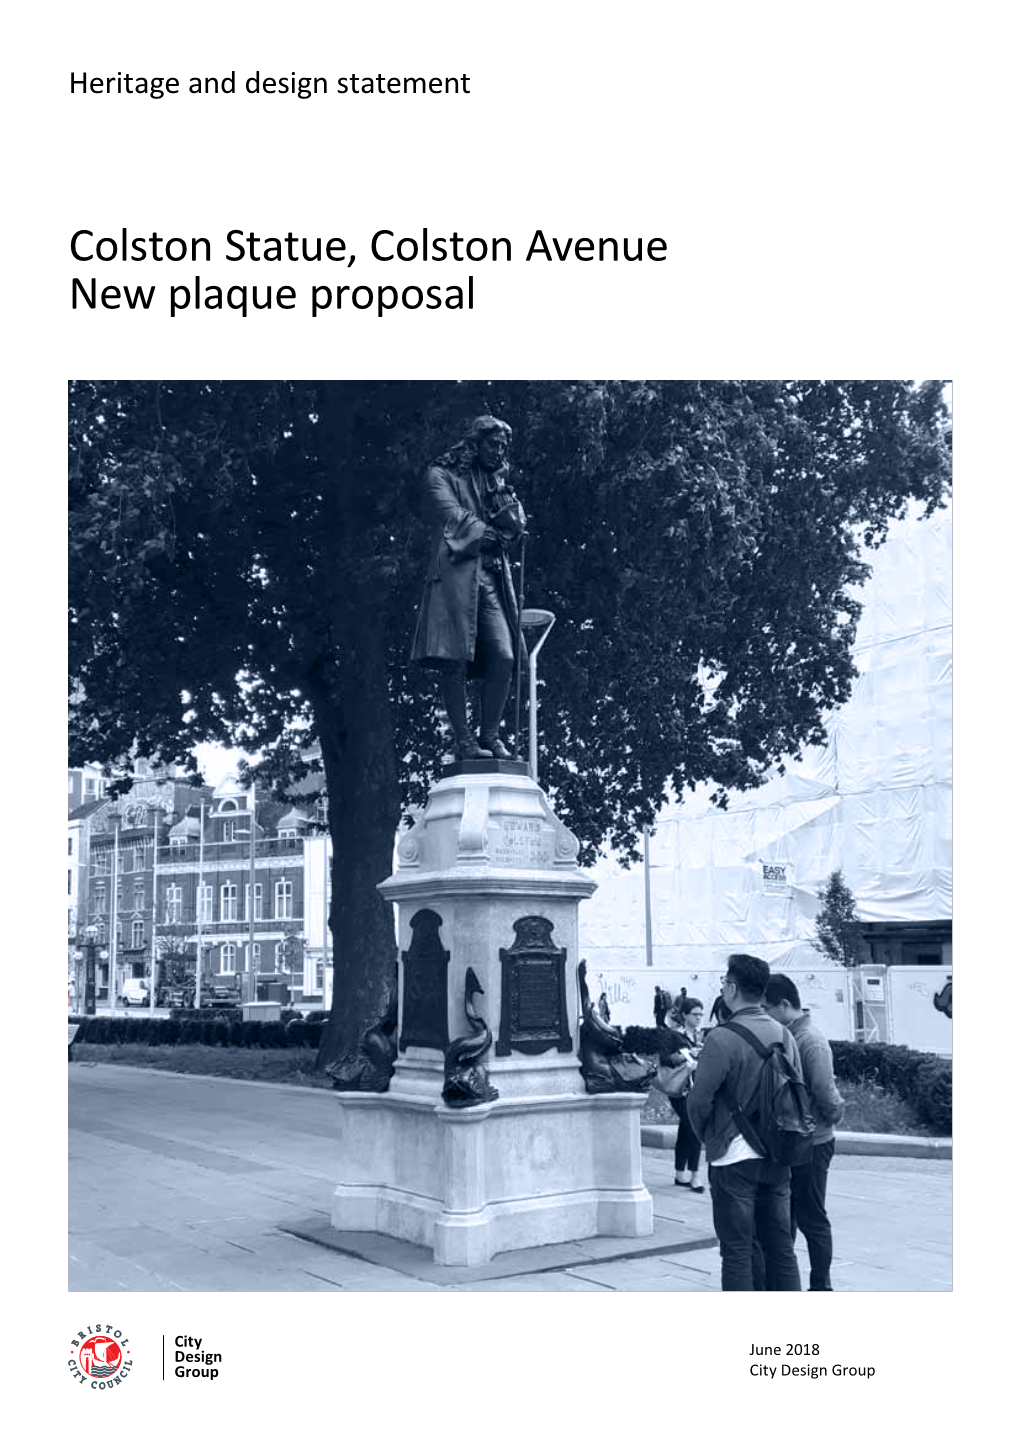 Colston Statue, Colston Avenue New Plaque Proposal